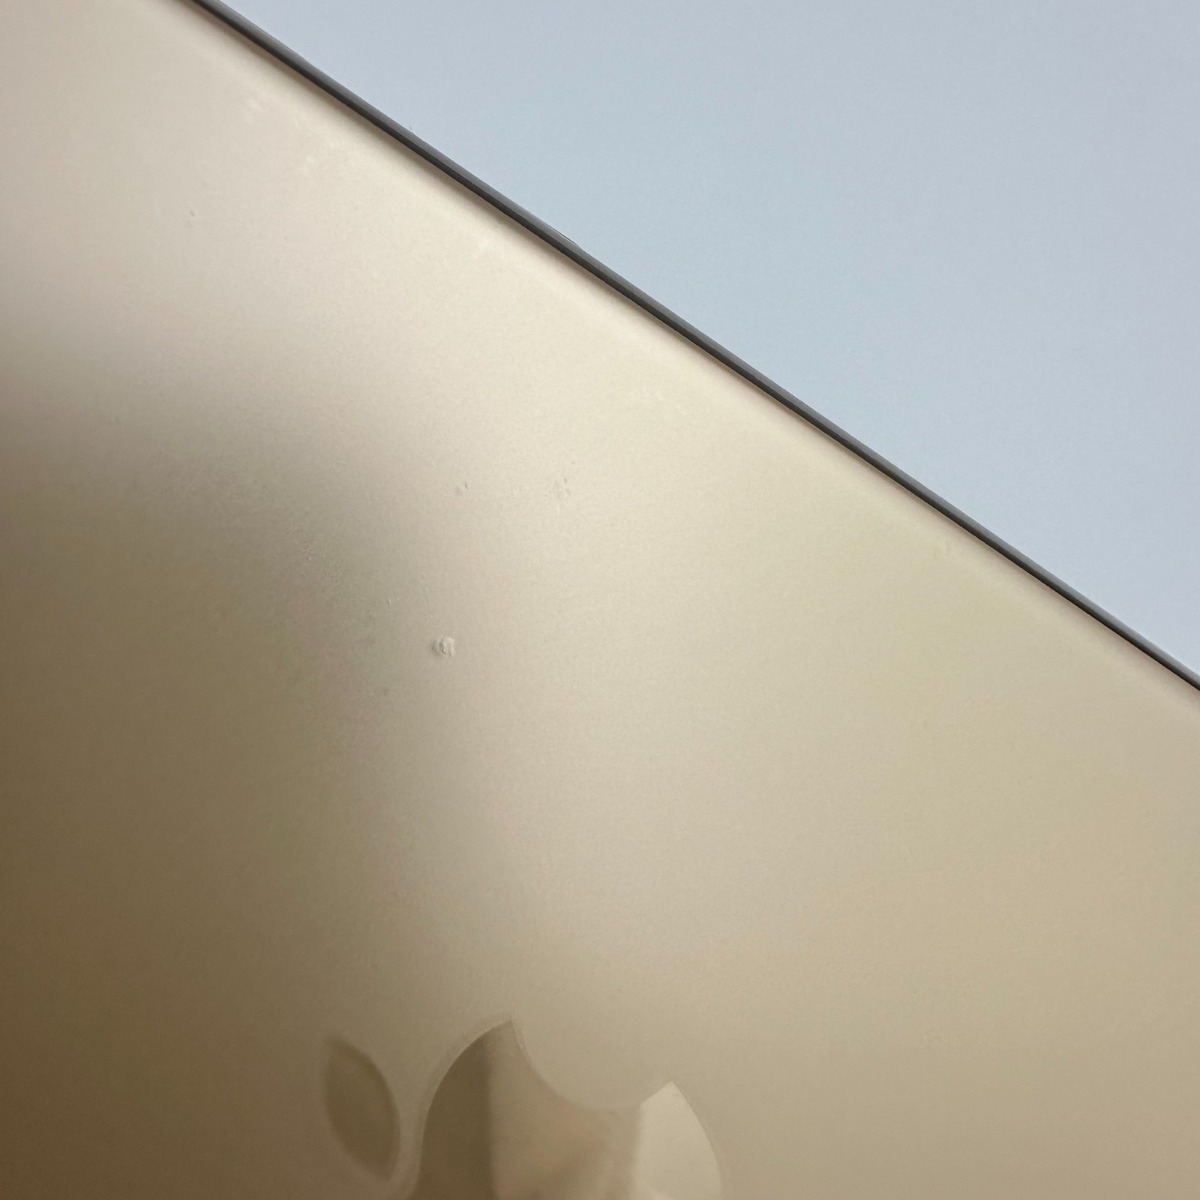 Apple iPhone 11 Pro 64Gb Gold Б/У №1530 (стан 8/10)